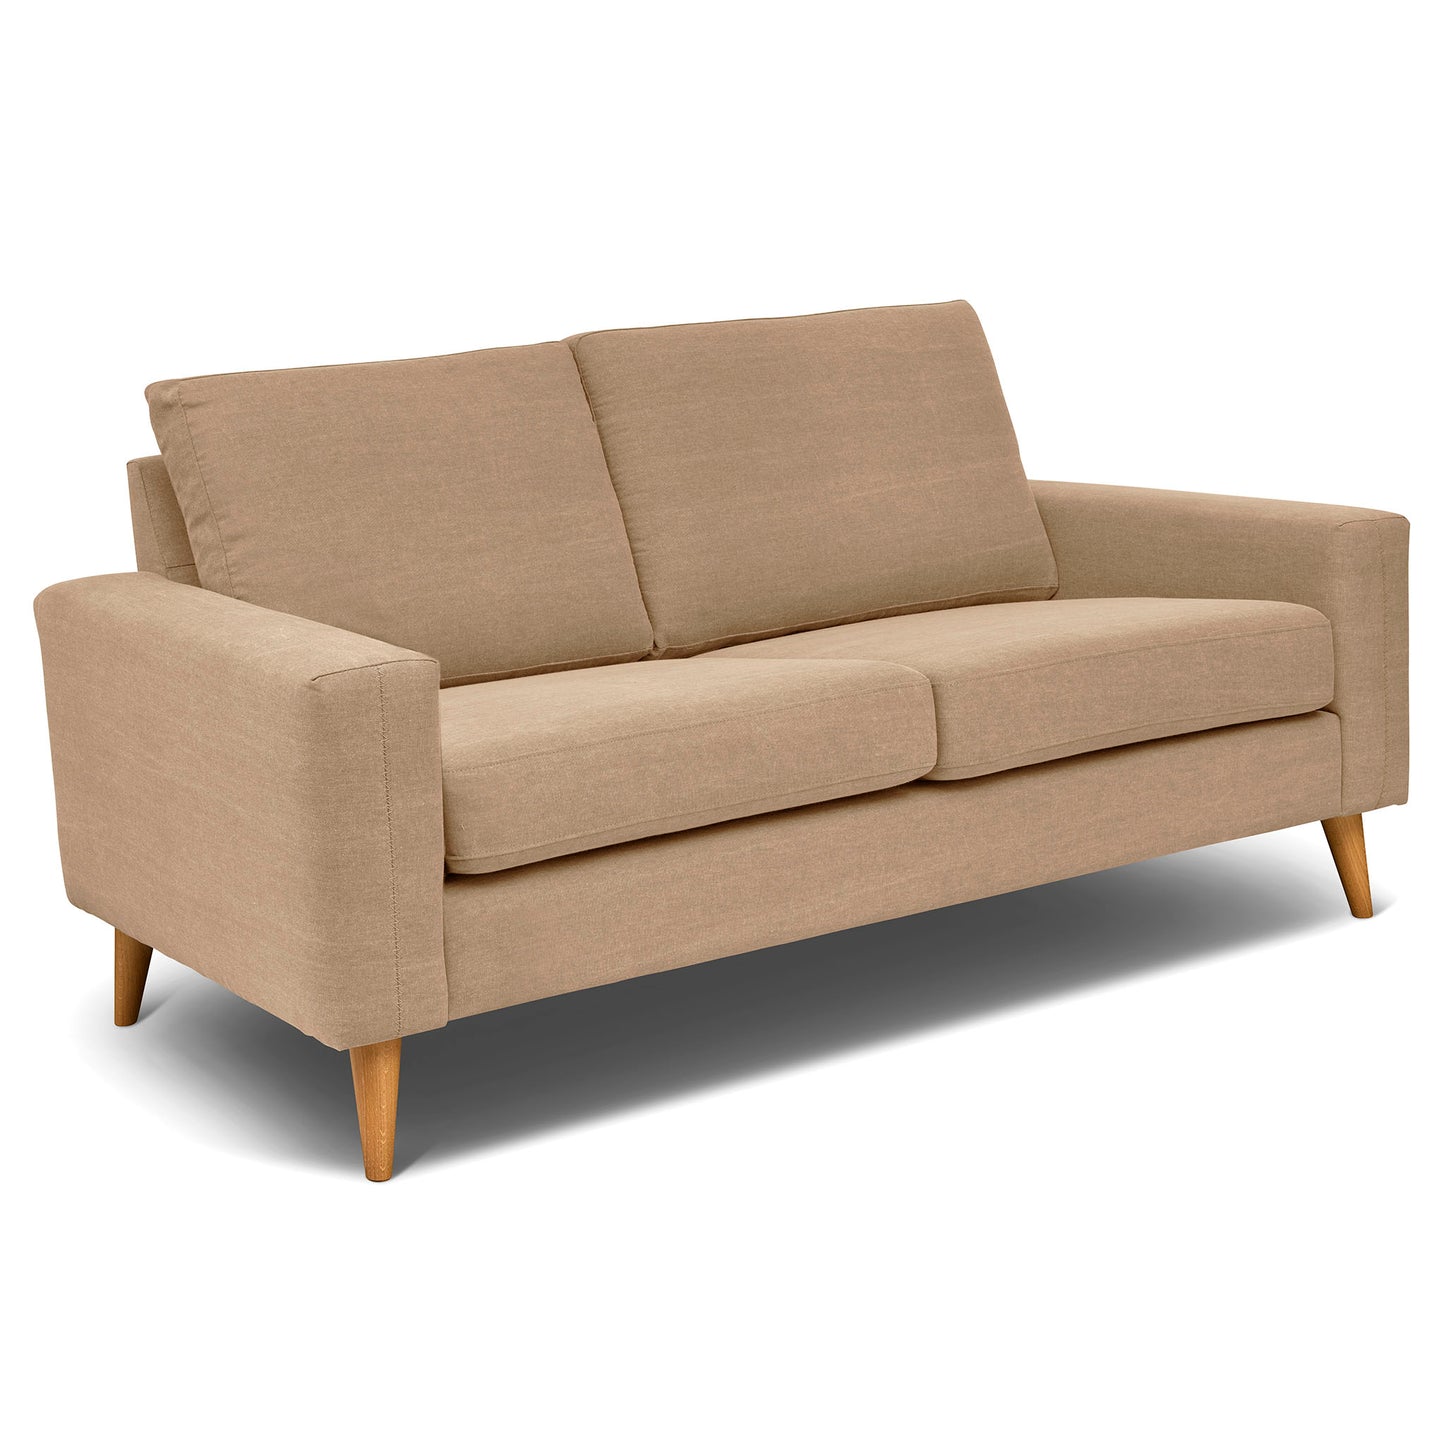 Beige 2,5-sits soffa 184 cm bred, som är sittvänlig för äldre